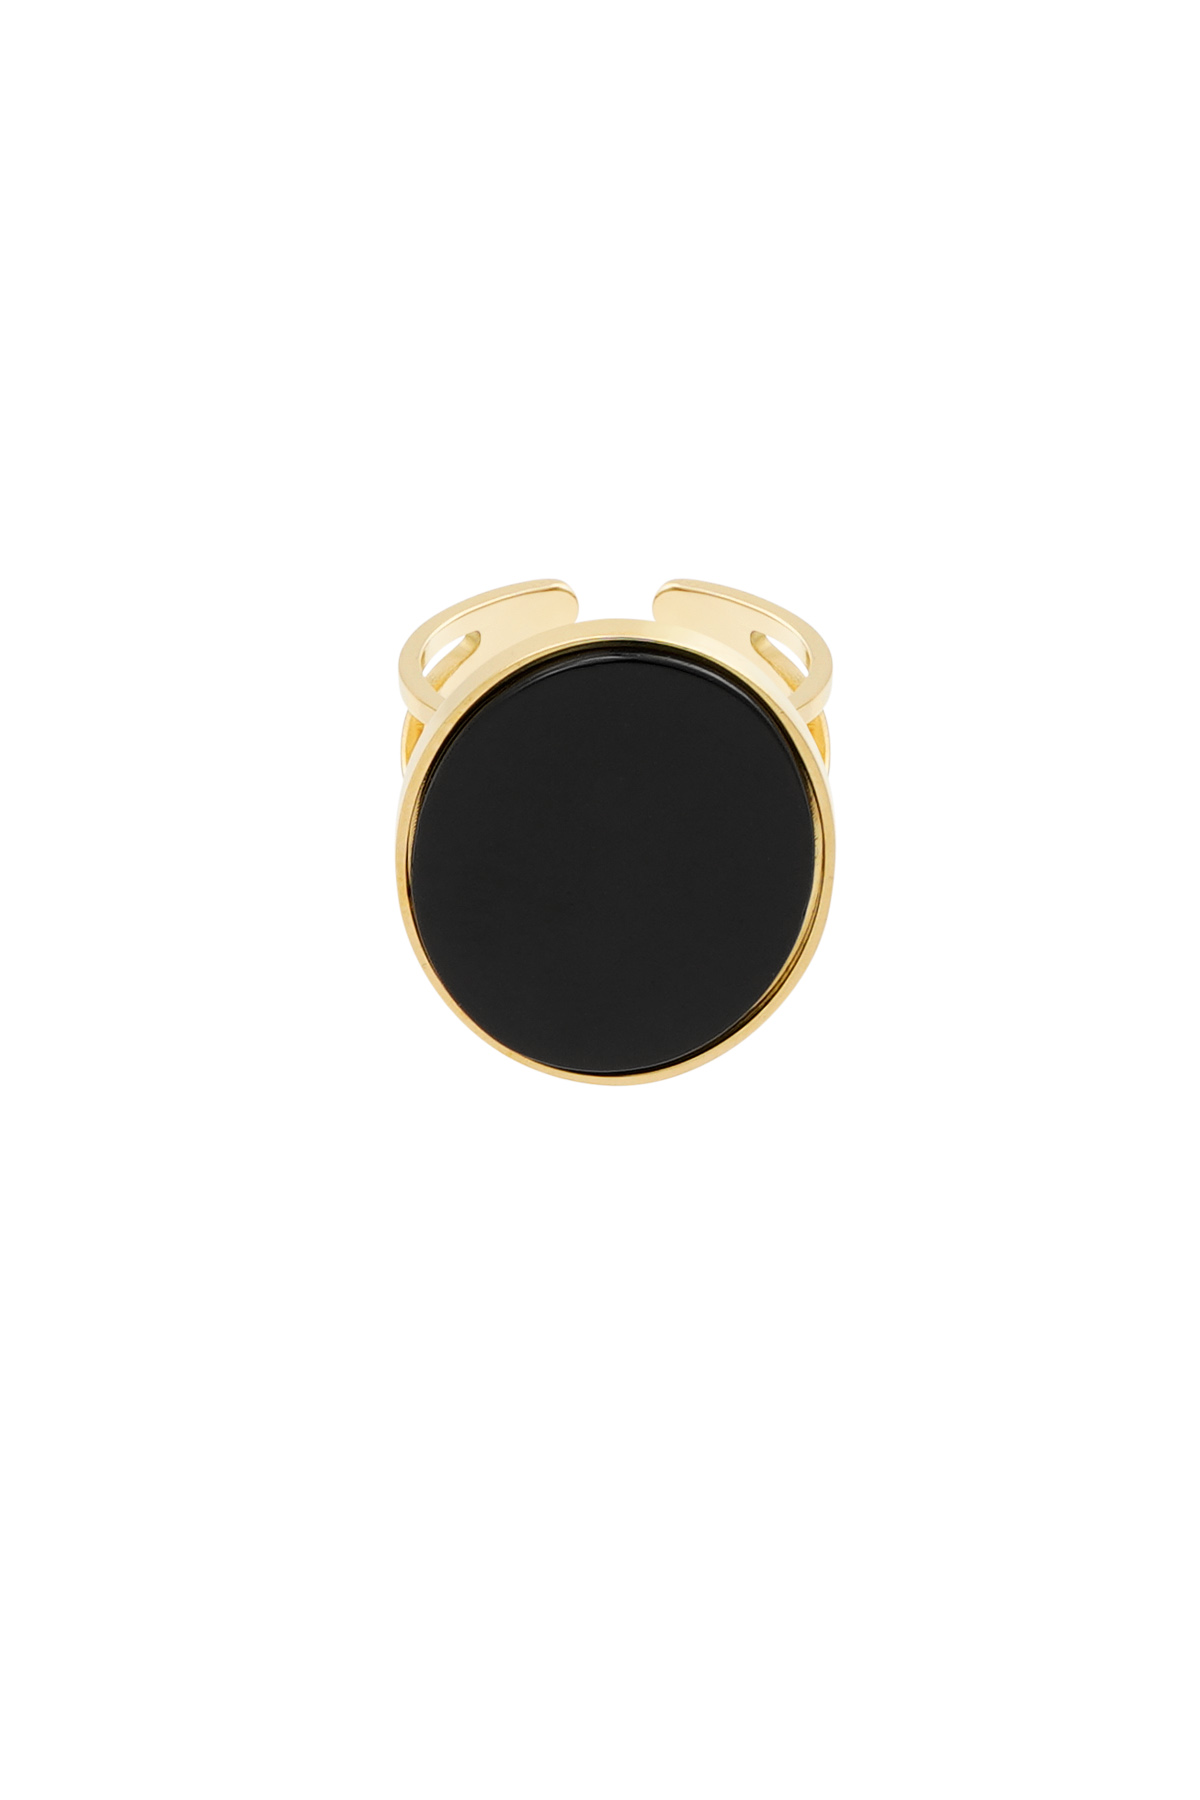 Ring grote steen - goud/zwart 